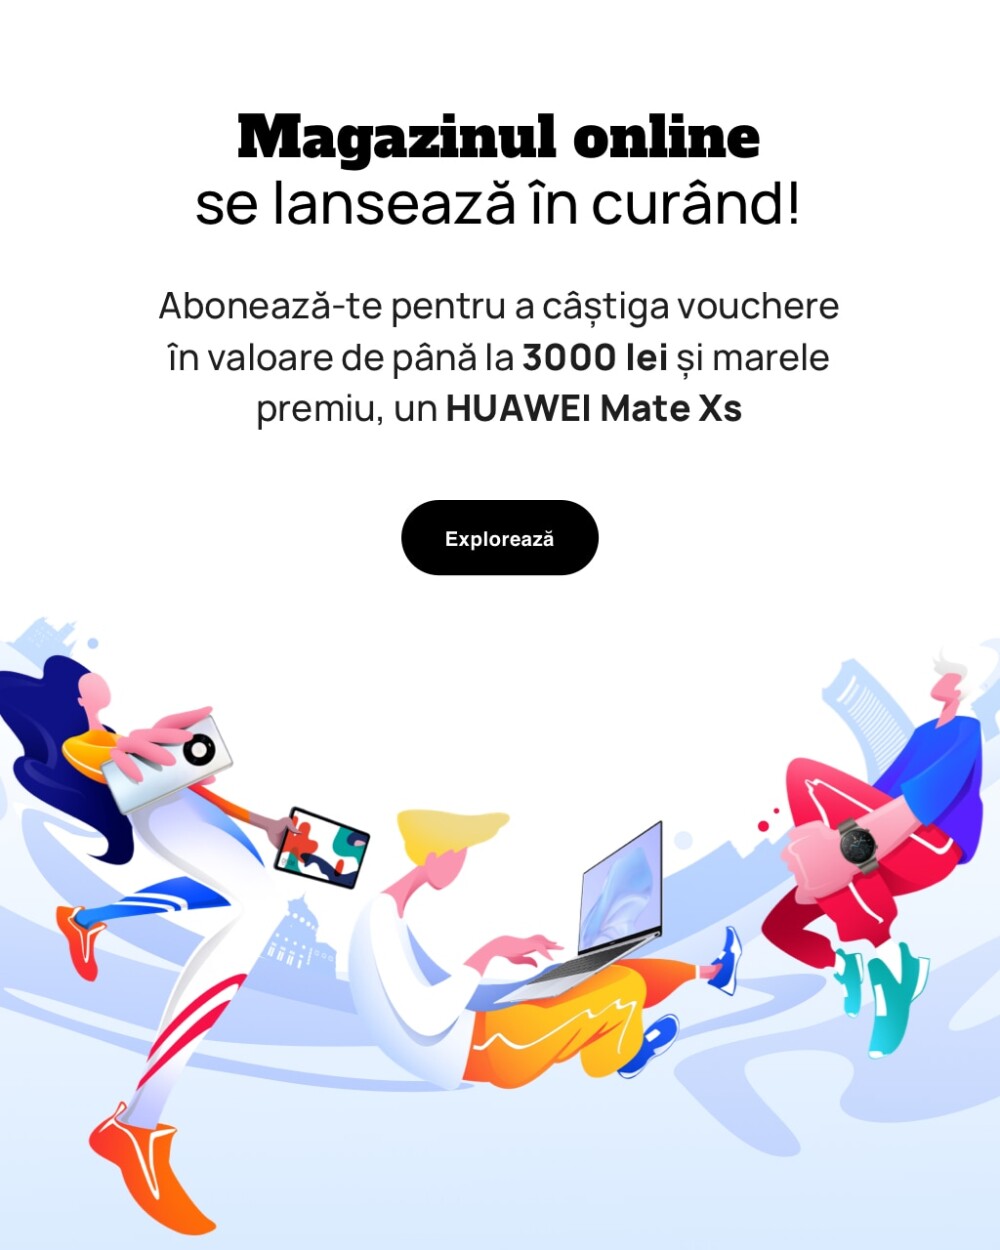 Noul magazin online Huawei Store se lansează în România. Marele premiu: un HUAWEI Mate Xs pliabil de peste 2.000 euro - Imaginea 1